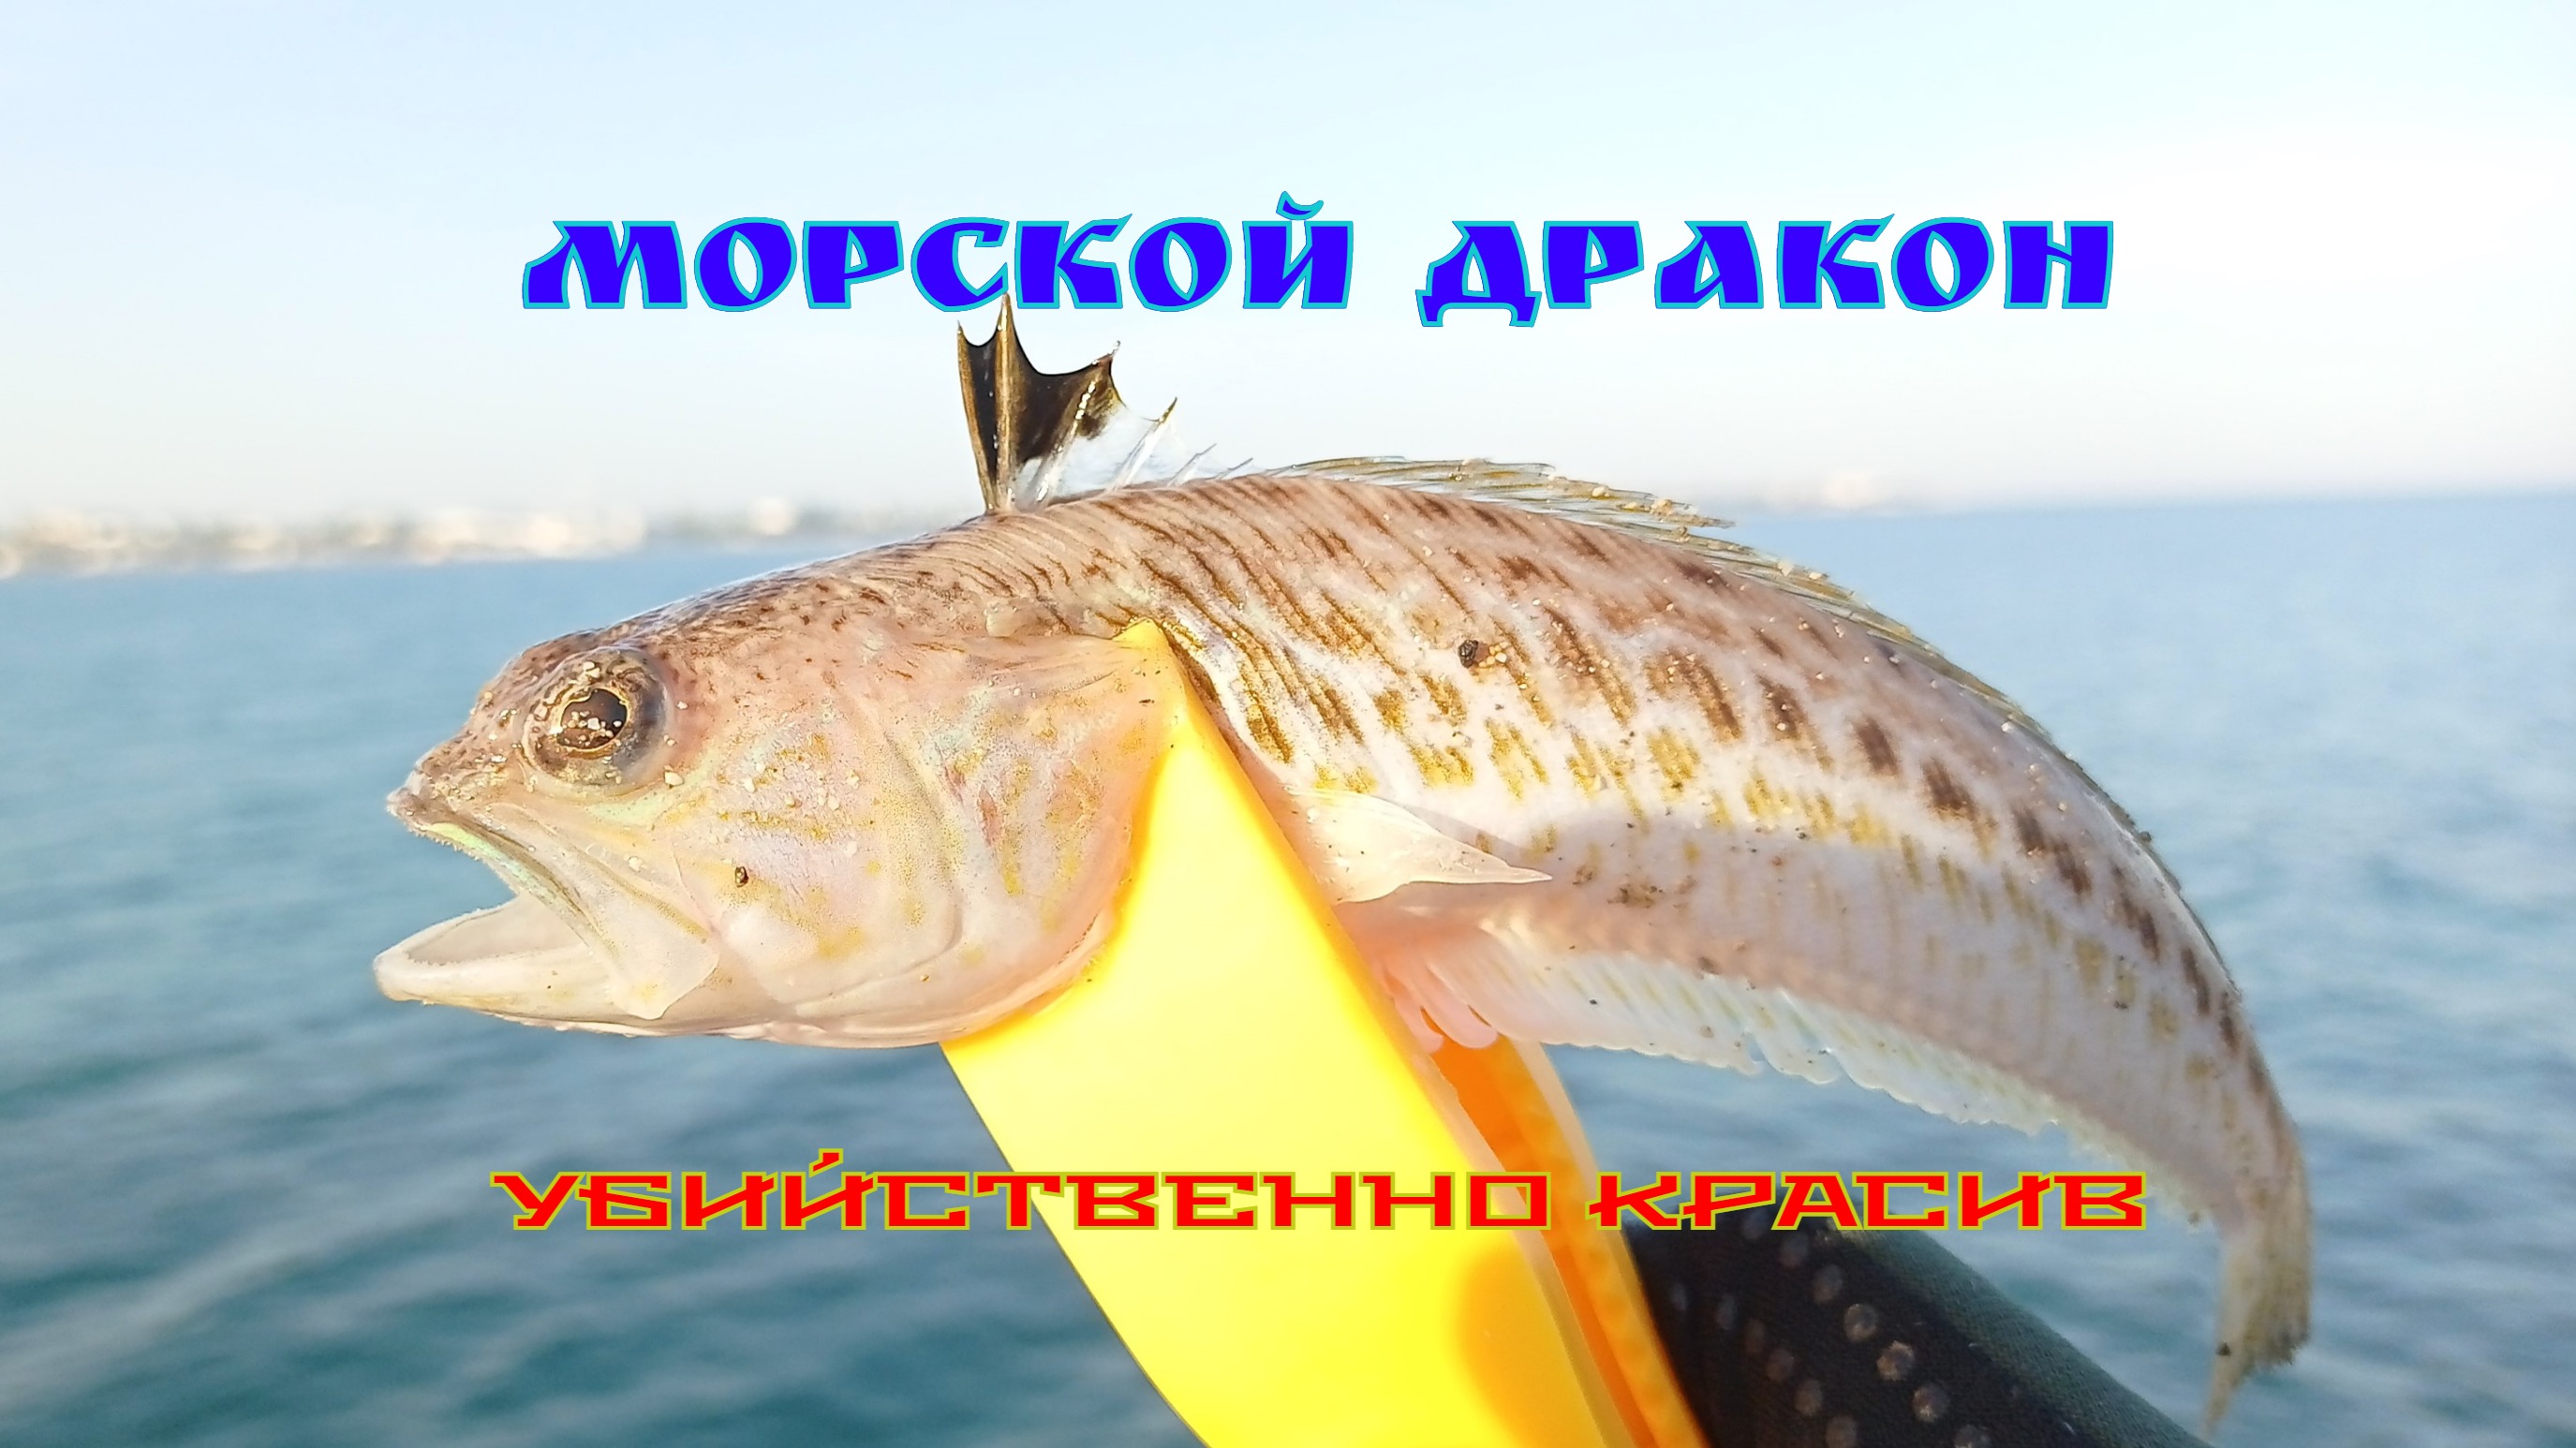 Рыба - убийца в Крыму. ОПАСНОСТЬ ДЛЯ РЫБАКОВ И КУПАЮЩИХСЯ, НА ПОБЕРЕЖЬЕ ЧЁРНОГО МОРЯ.